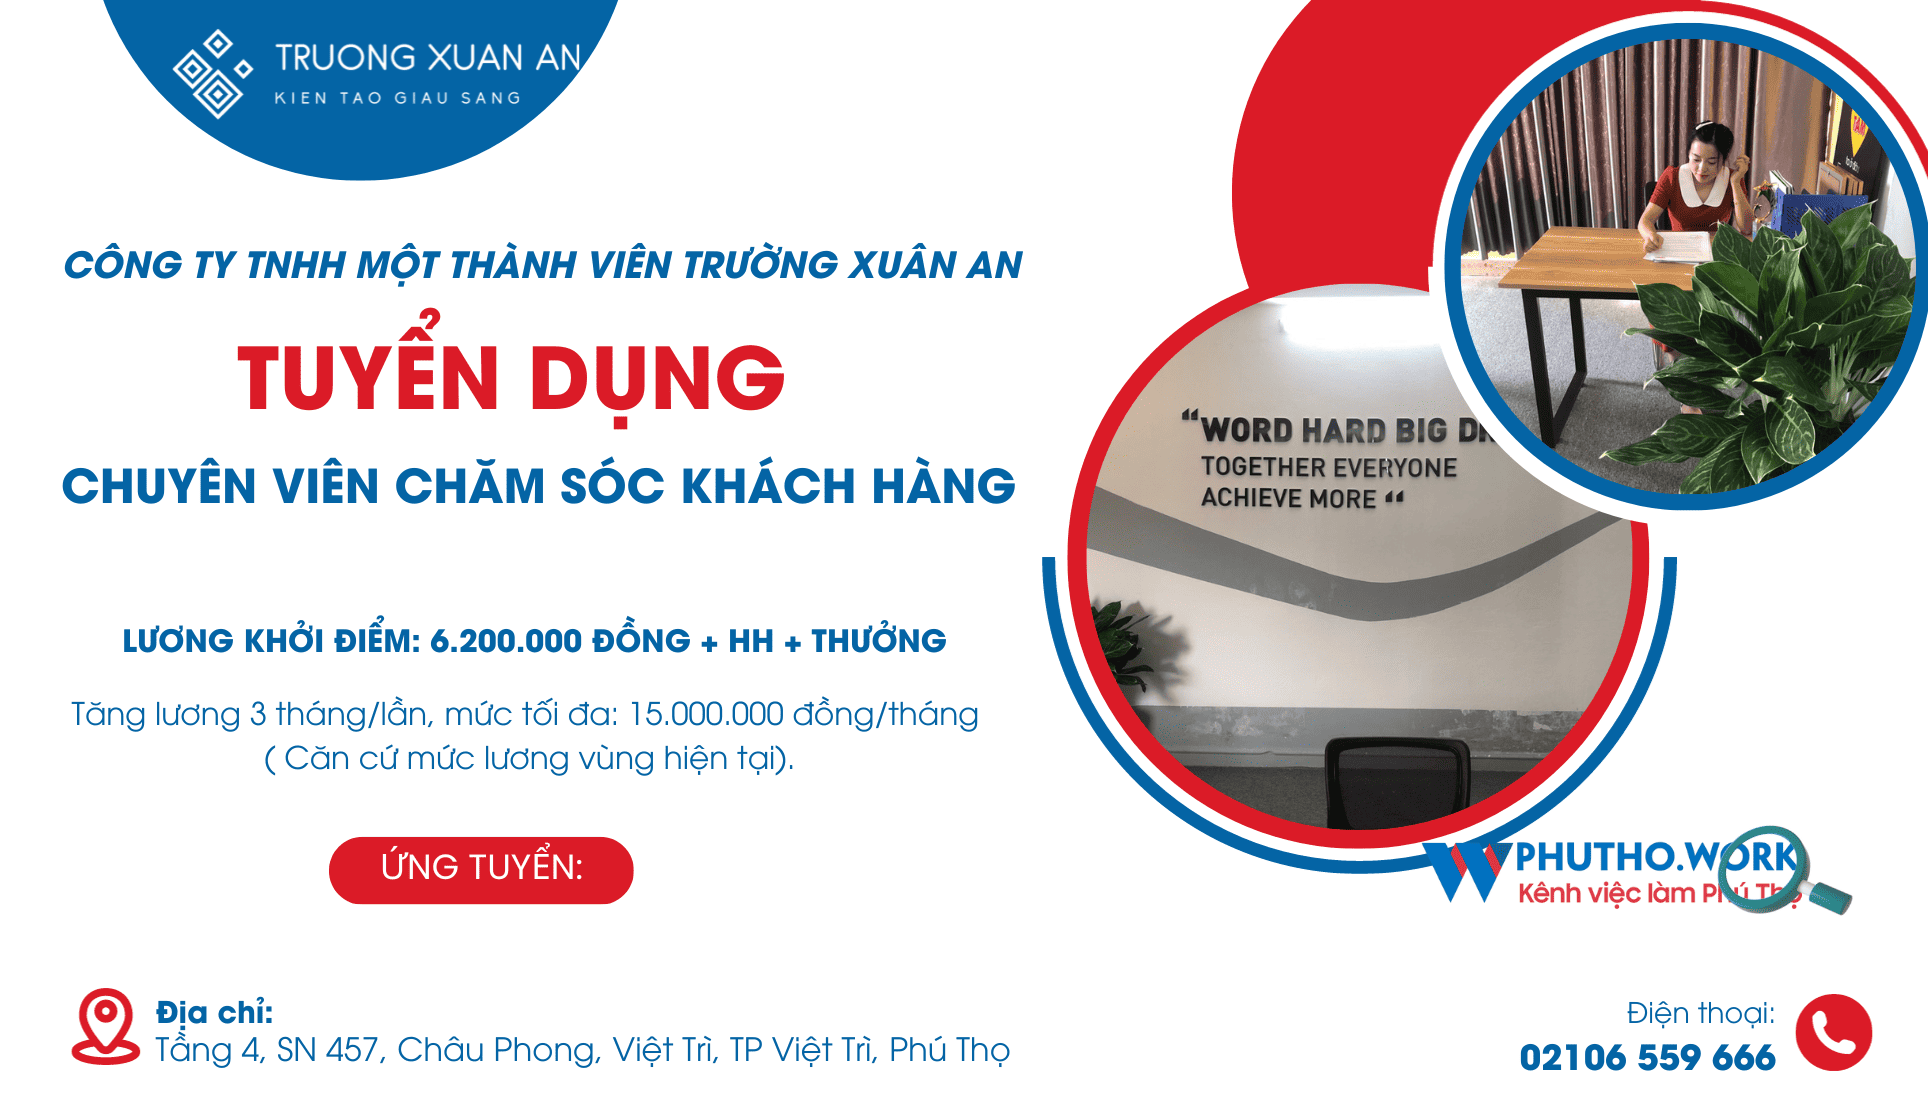 Cong Ty Tnhh Mot Thanh Vien Truong Xuan An Tuyen Dung Chuyen Vien Cham Soc Khach Hang 7